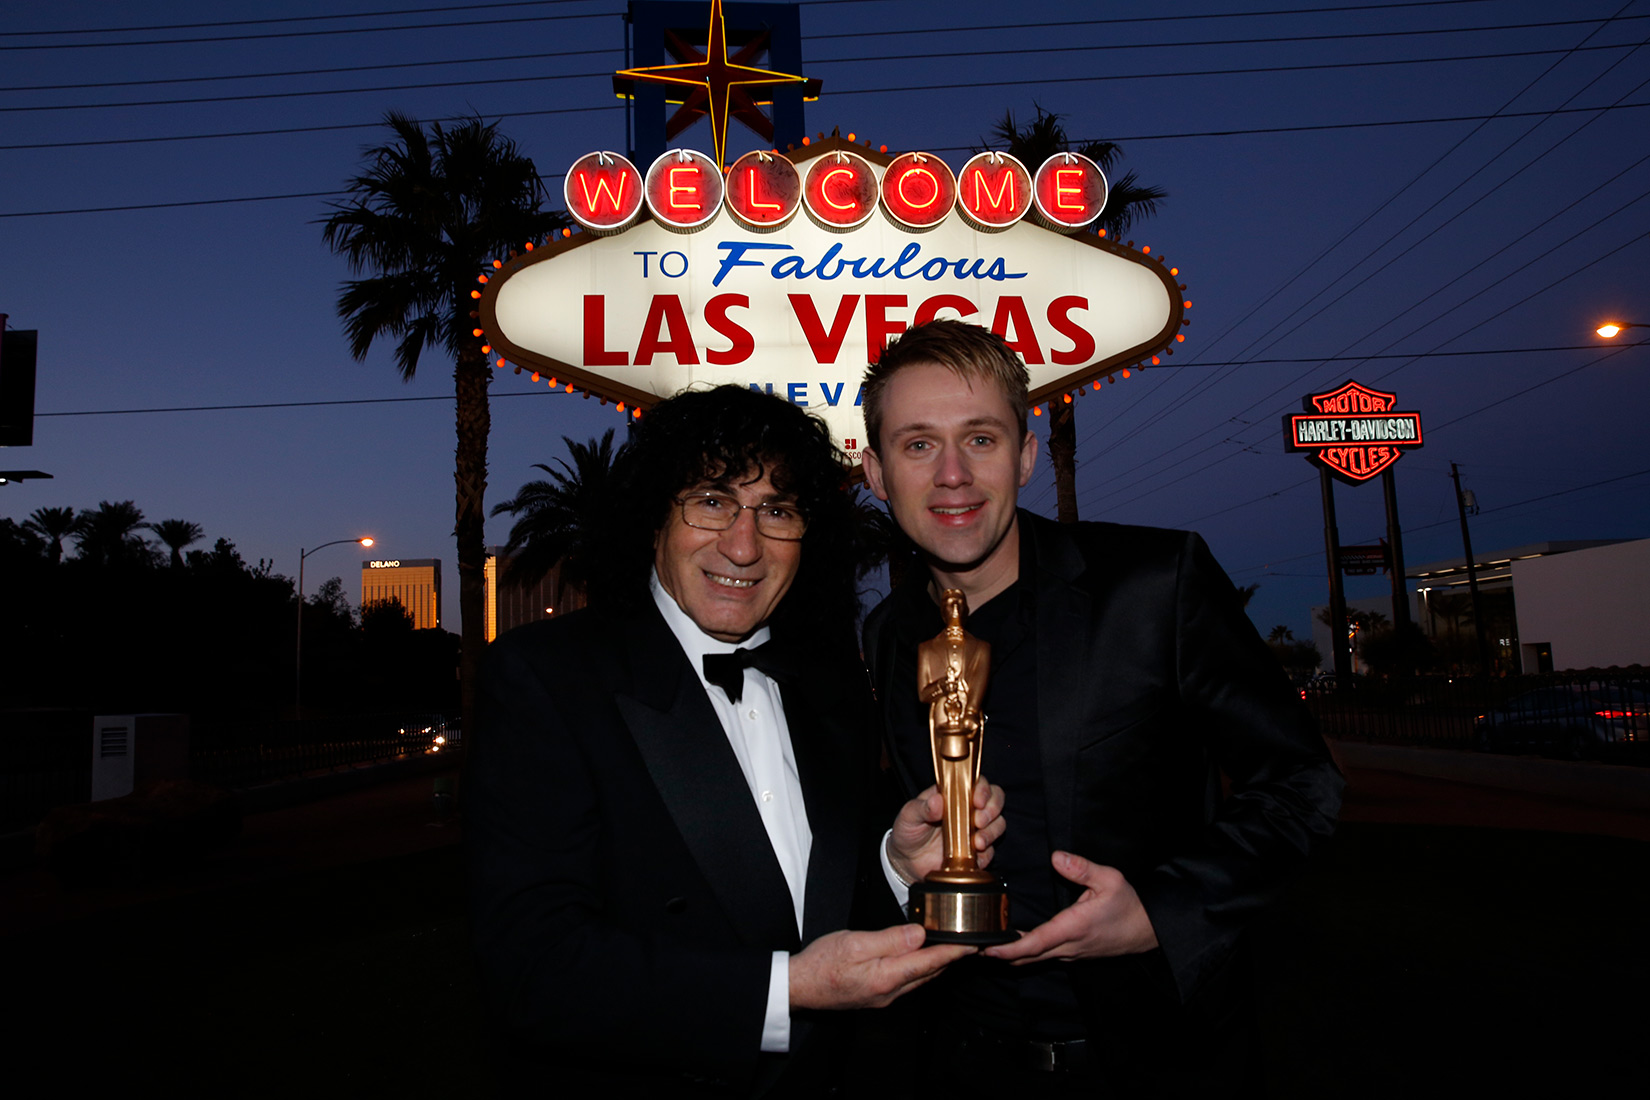 Grote entertainment vakprijs in Las Vegas voor Nederlandse jongleur 